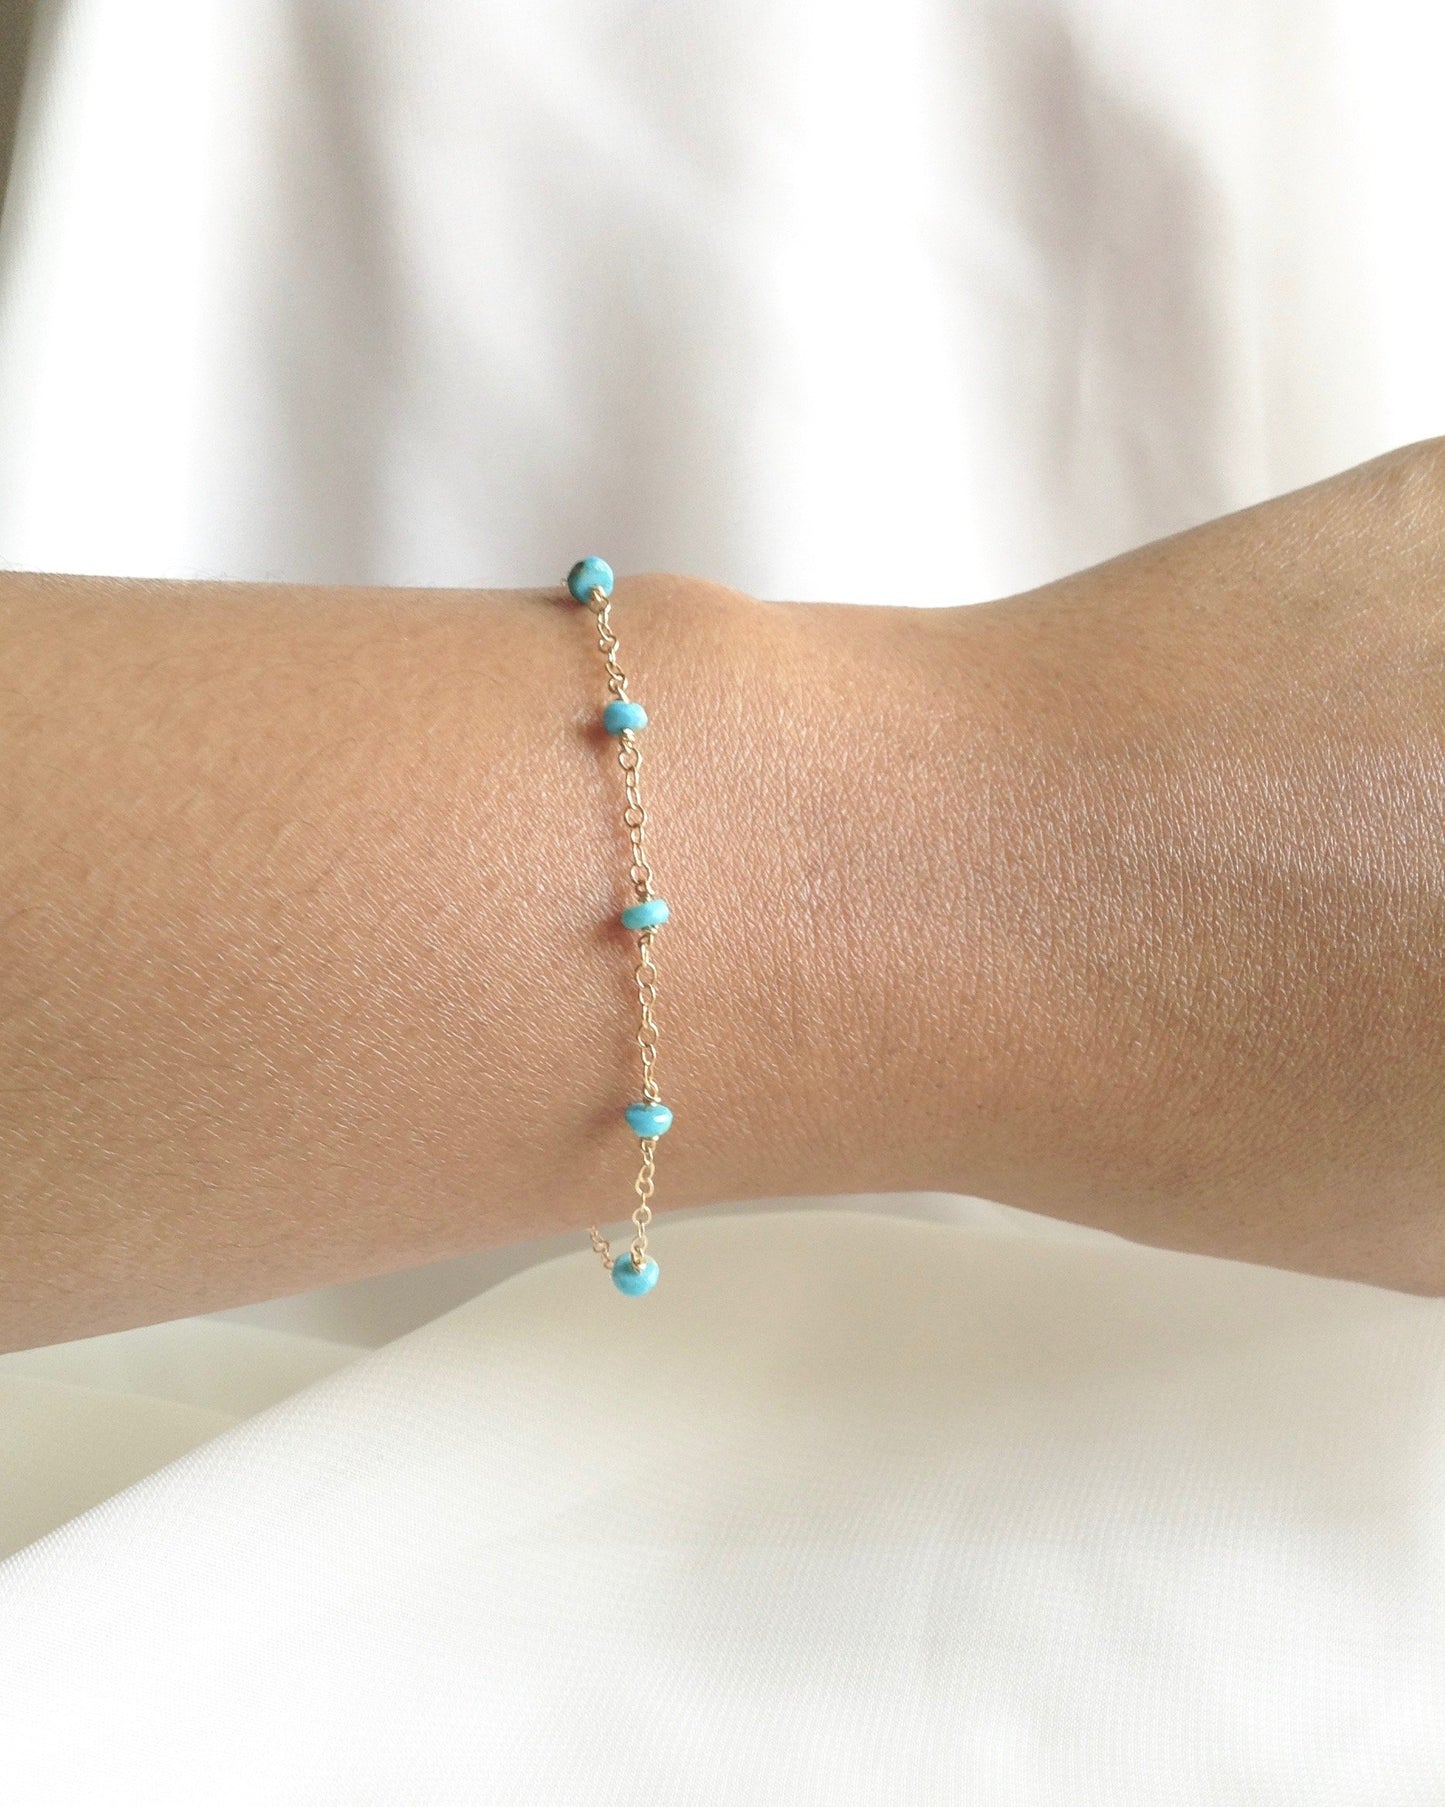 Sleeping Beauty Turquoise Simple Dainty Bracelet | Delicate Chain Bracelet | IB Jewelry